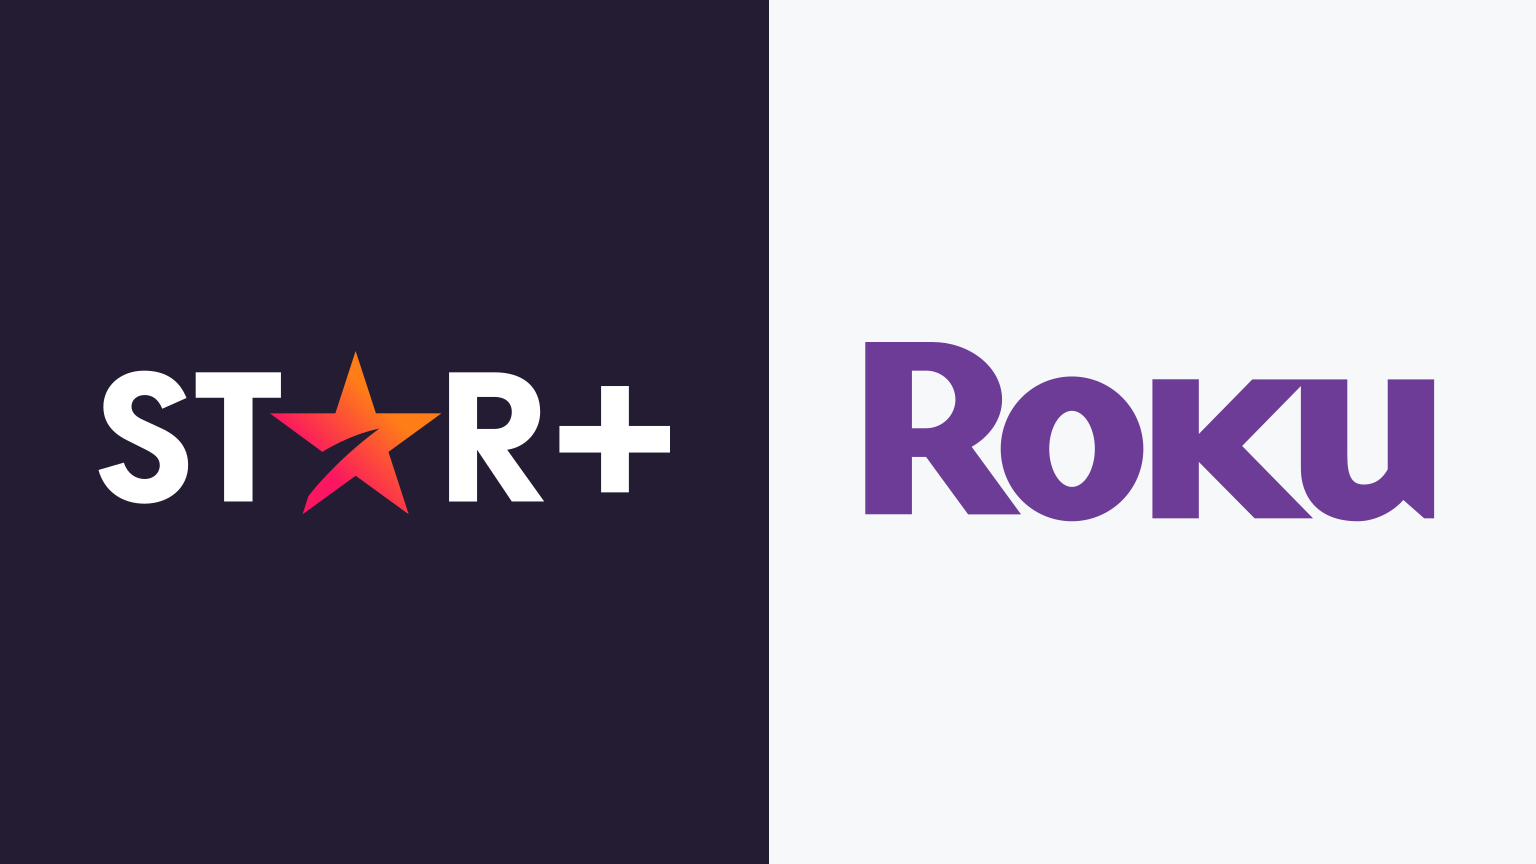 Cómo ver Star+ en Roku – The Streamable - Como Descargar Star Plus En Roku